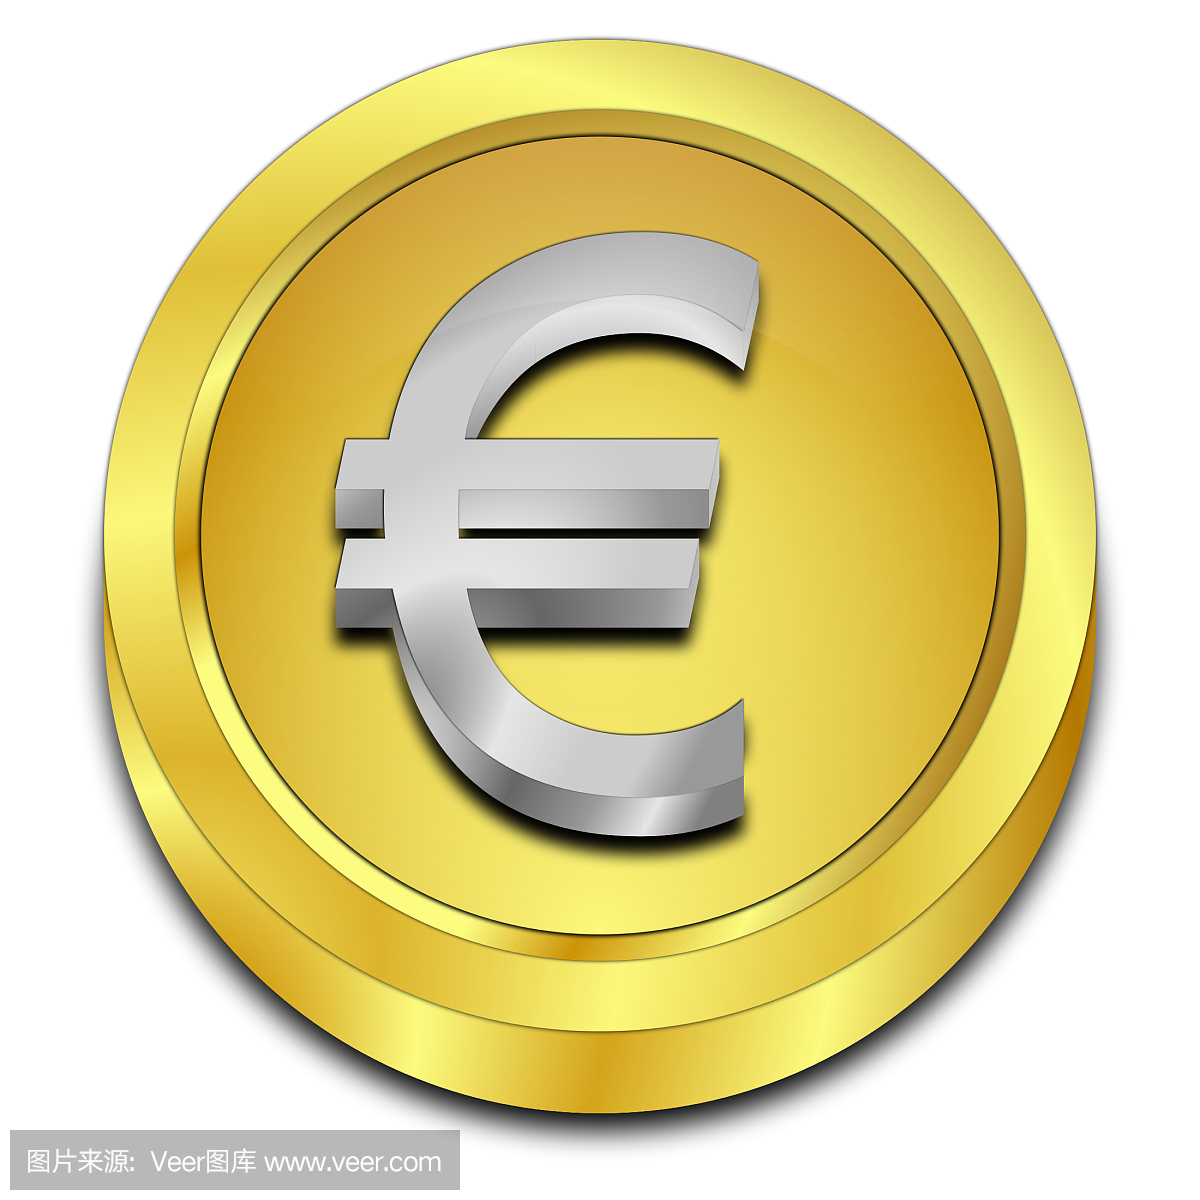 欧元符号,欧元标记,埃居,欧圆符号